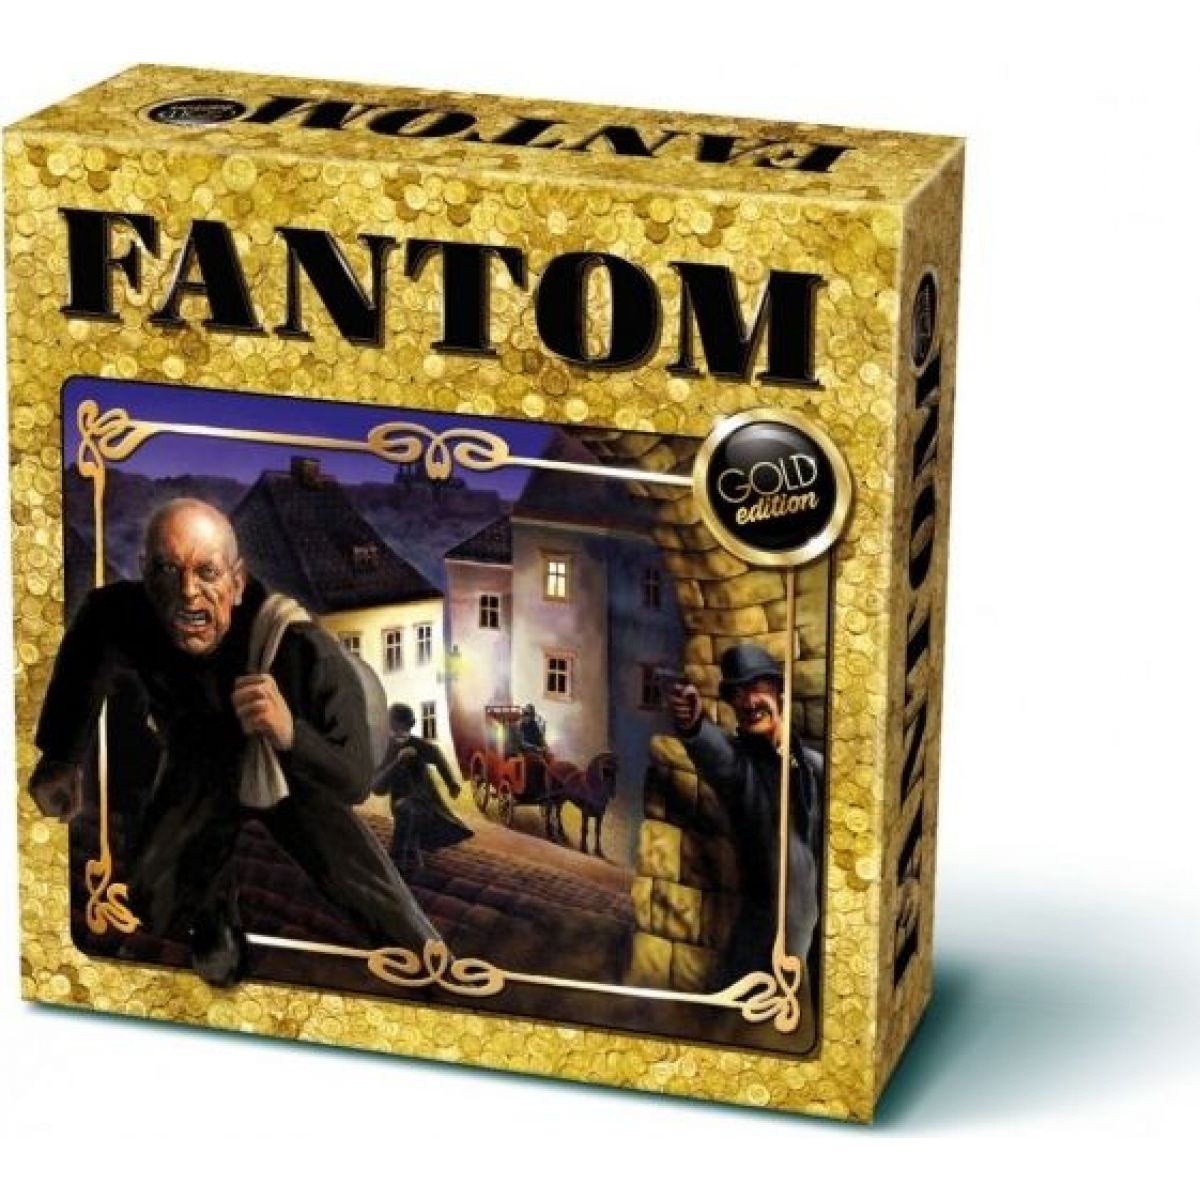 Bonaparte Společenská hra Fantom Gold Edition